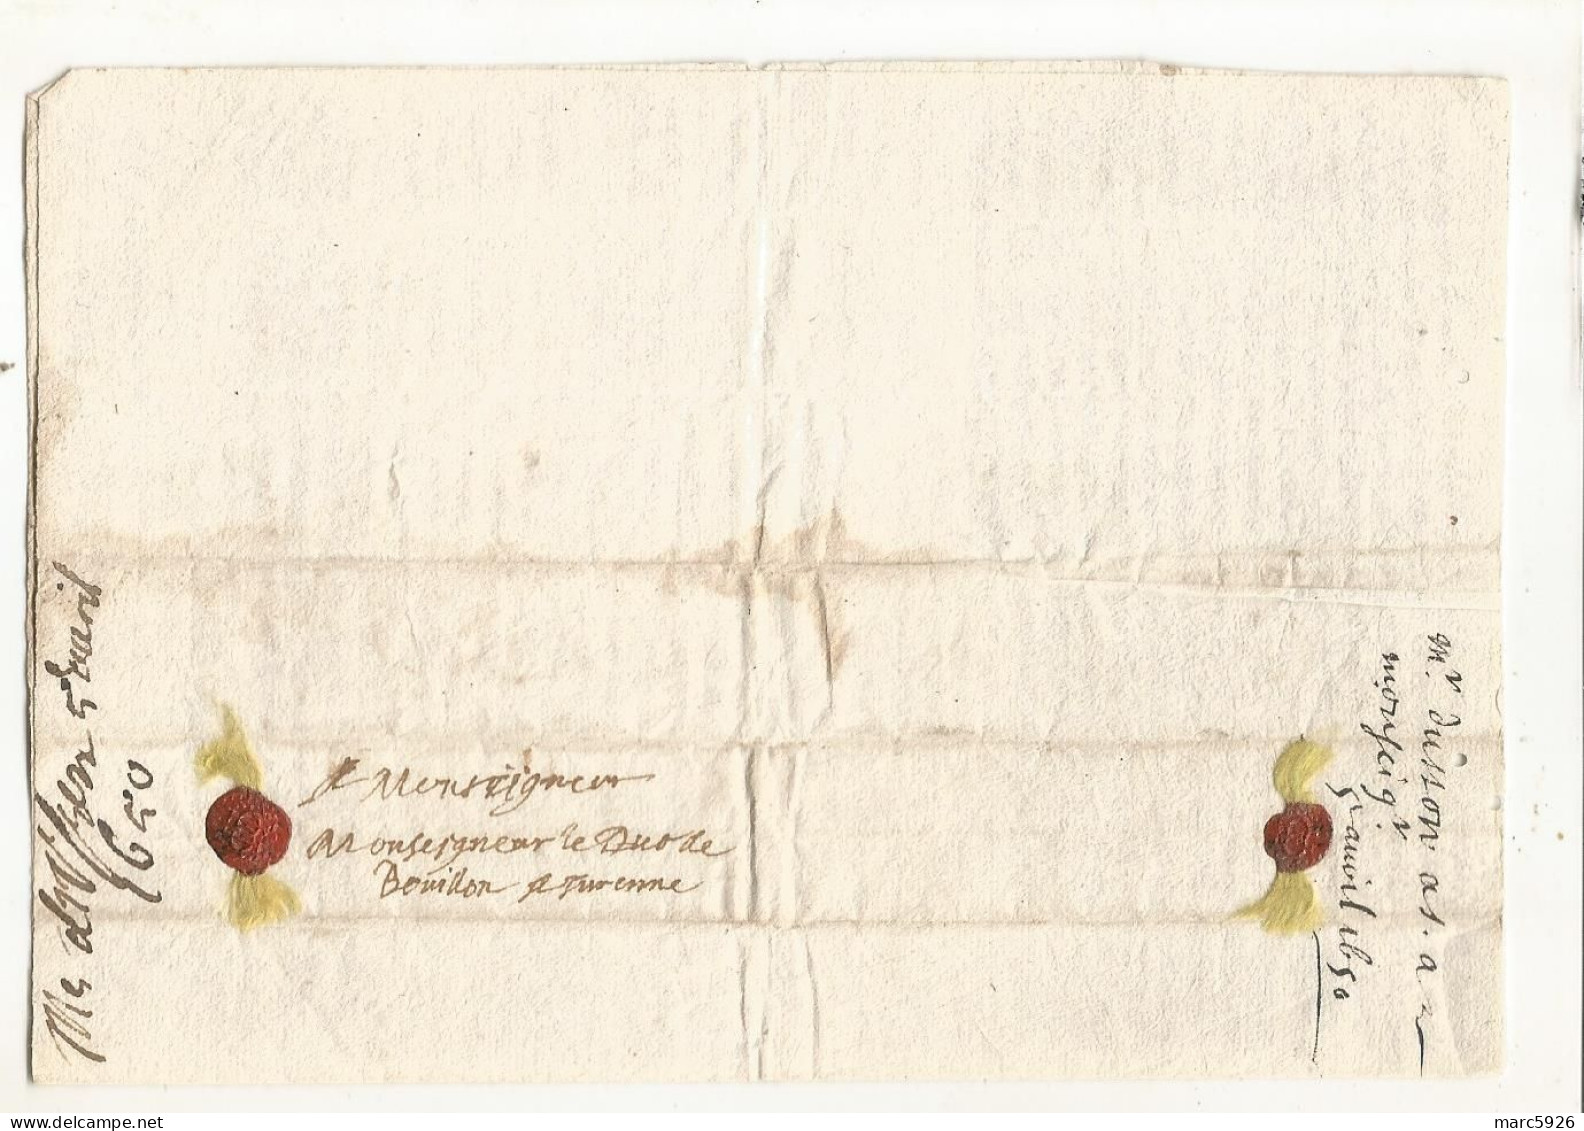 N°2036 ANCIENNE LETTRE AU DUC DE BOUILLON A TURENNE AVEC CACHET DE CIRE ET RUBAN DATE 1650 - Historical Documents